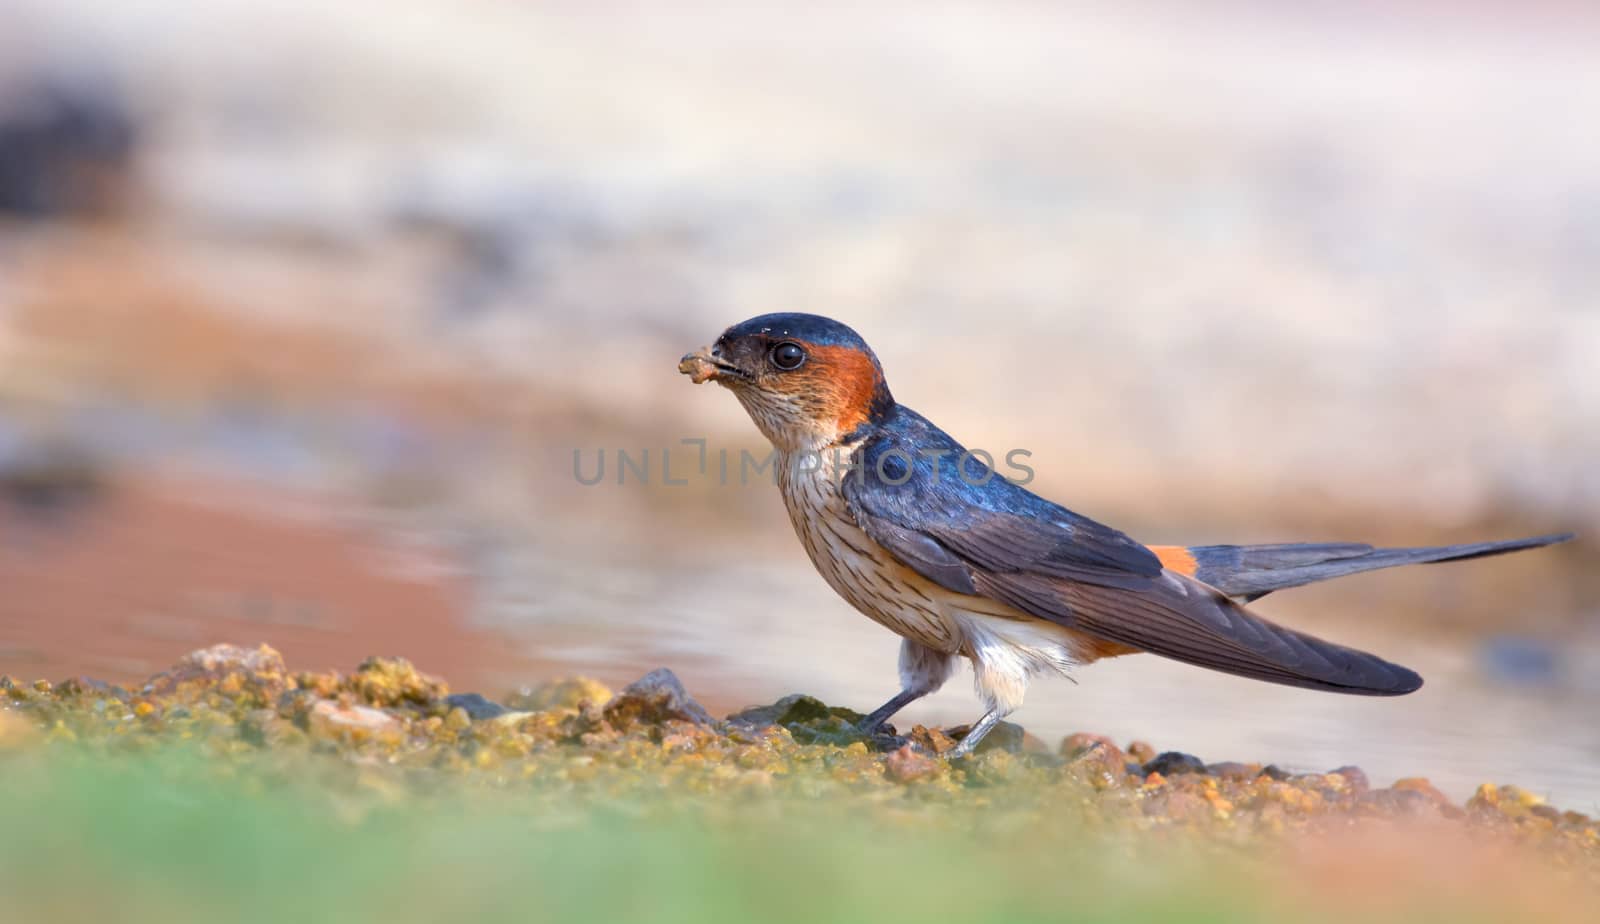 Red-rumped swallow by rkbalaji